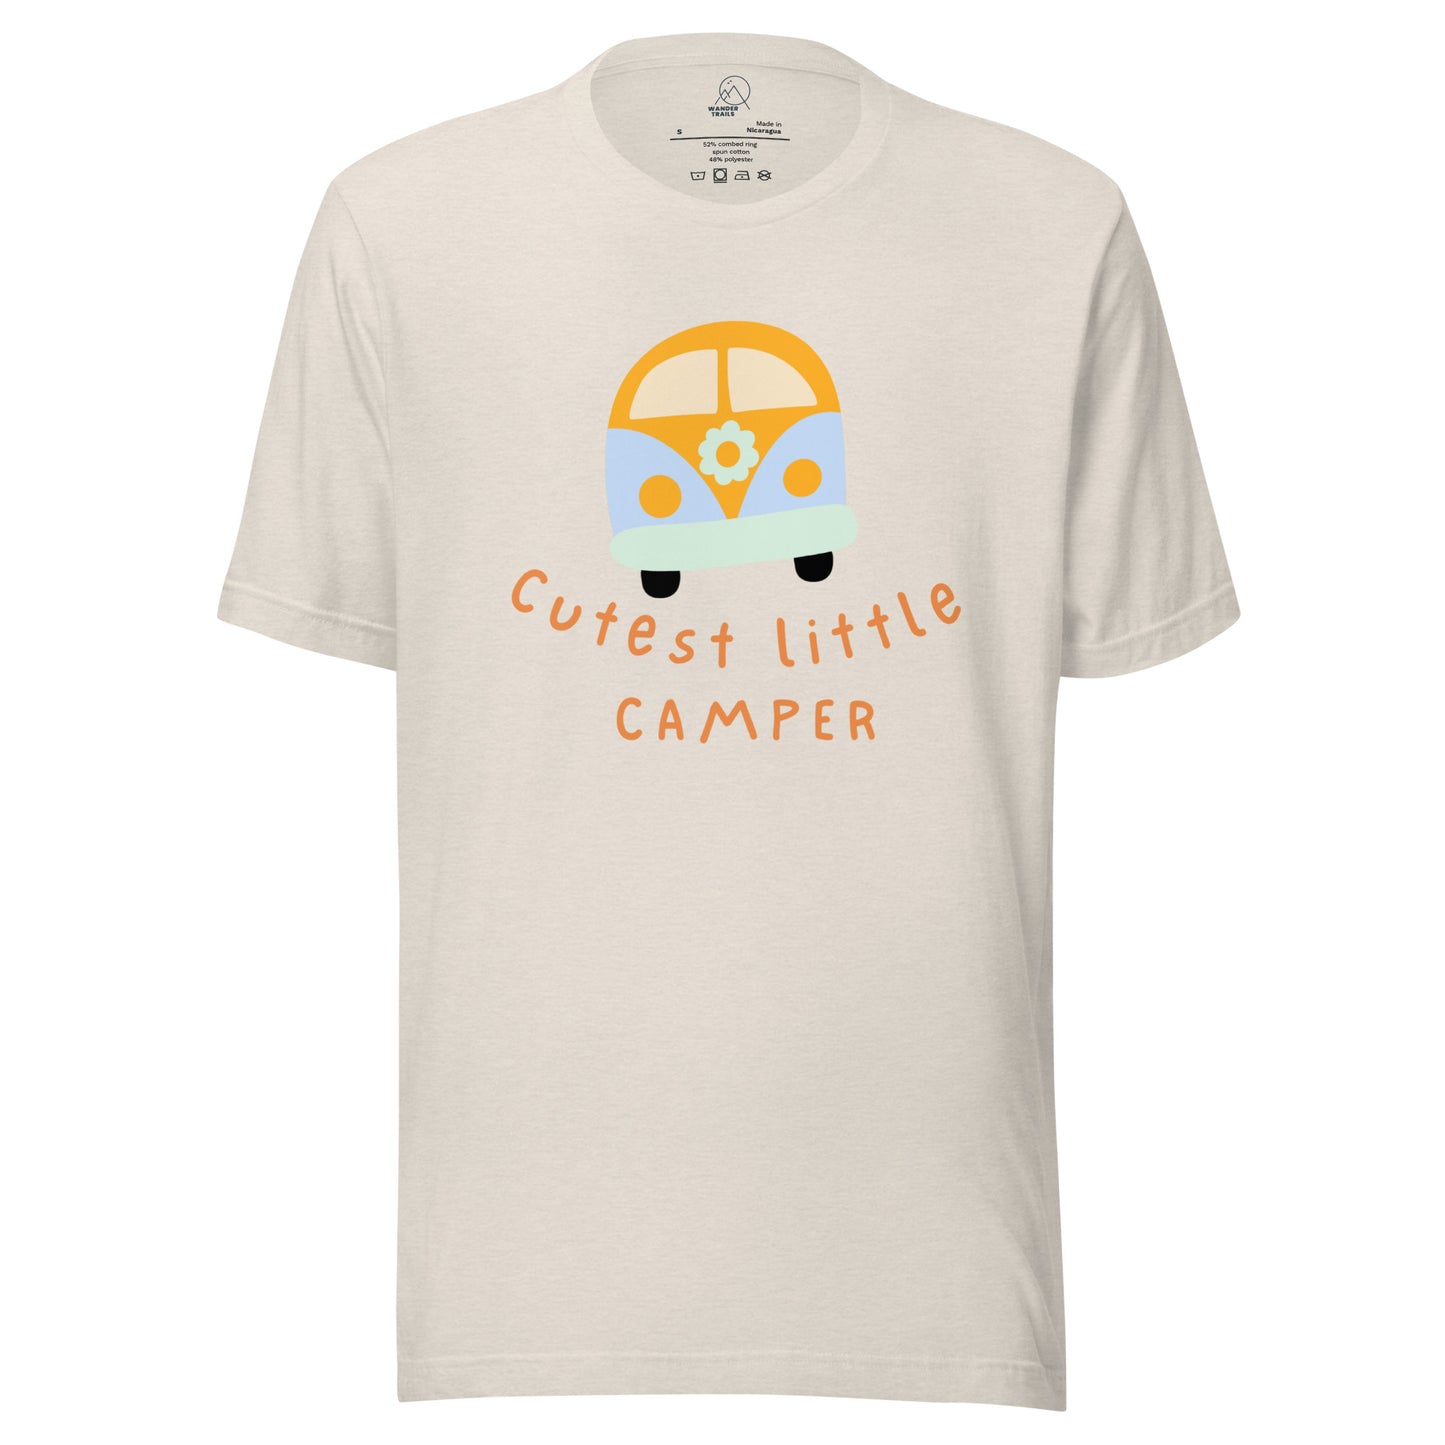 Cutest Little Camper T-shirt